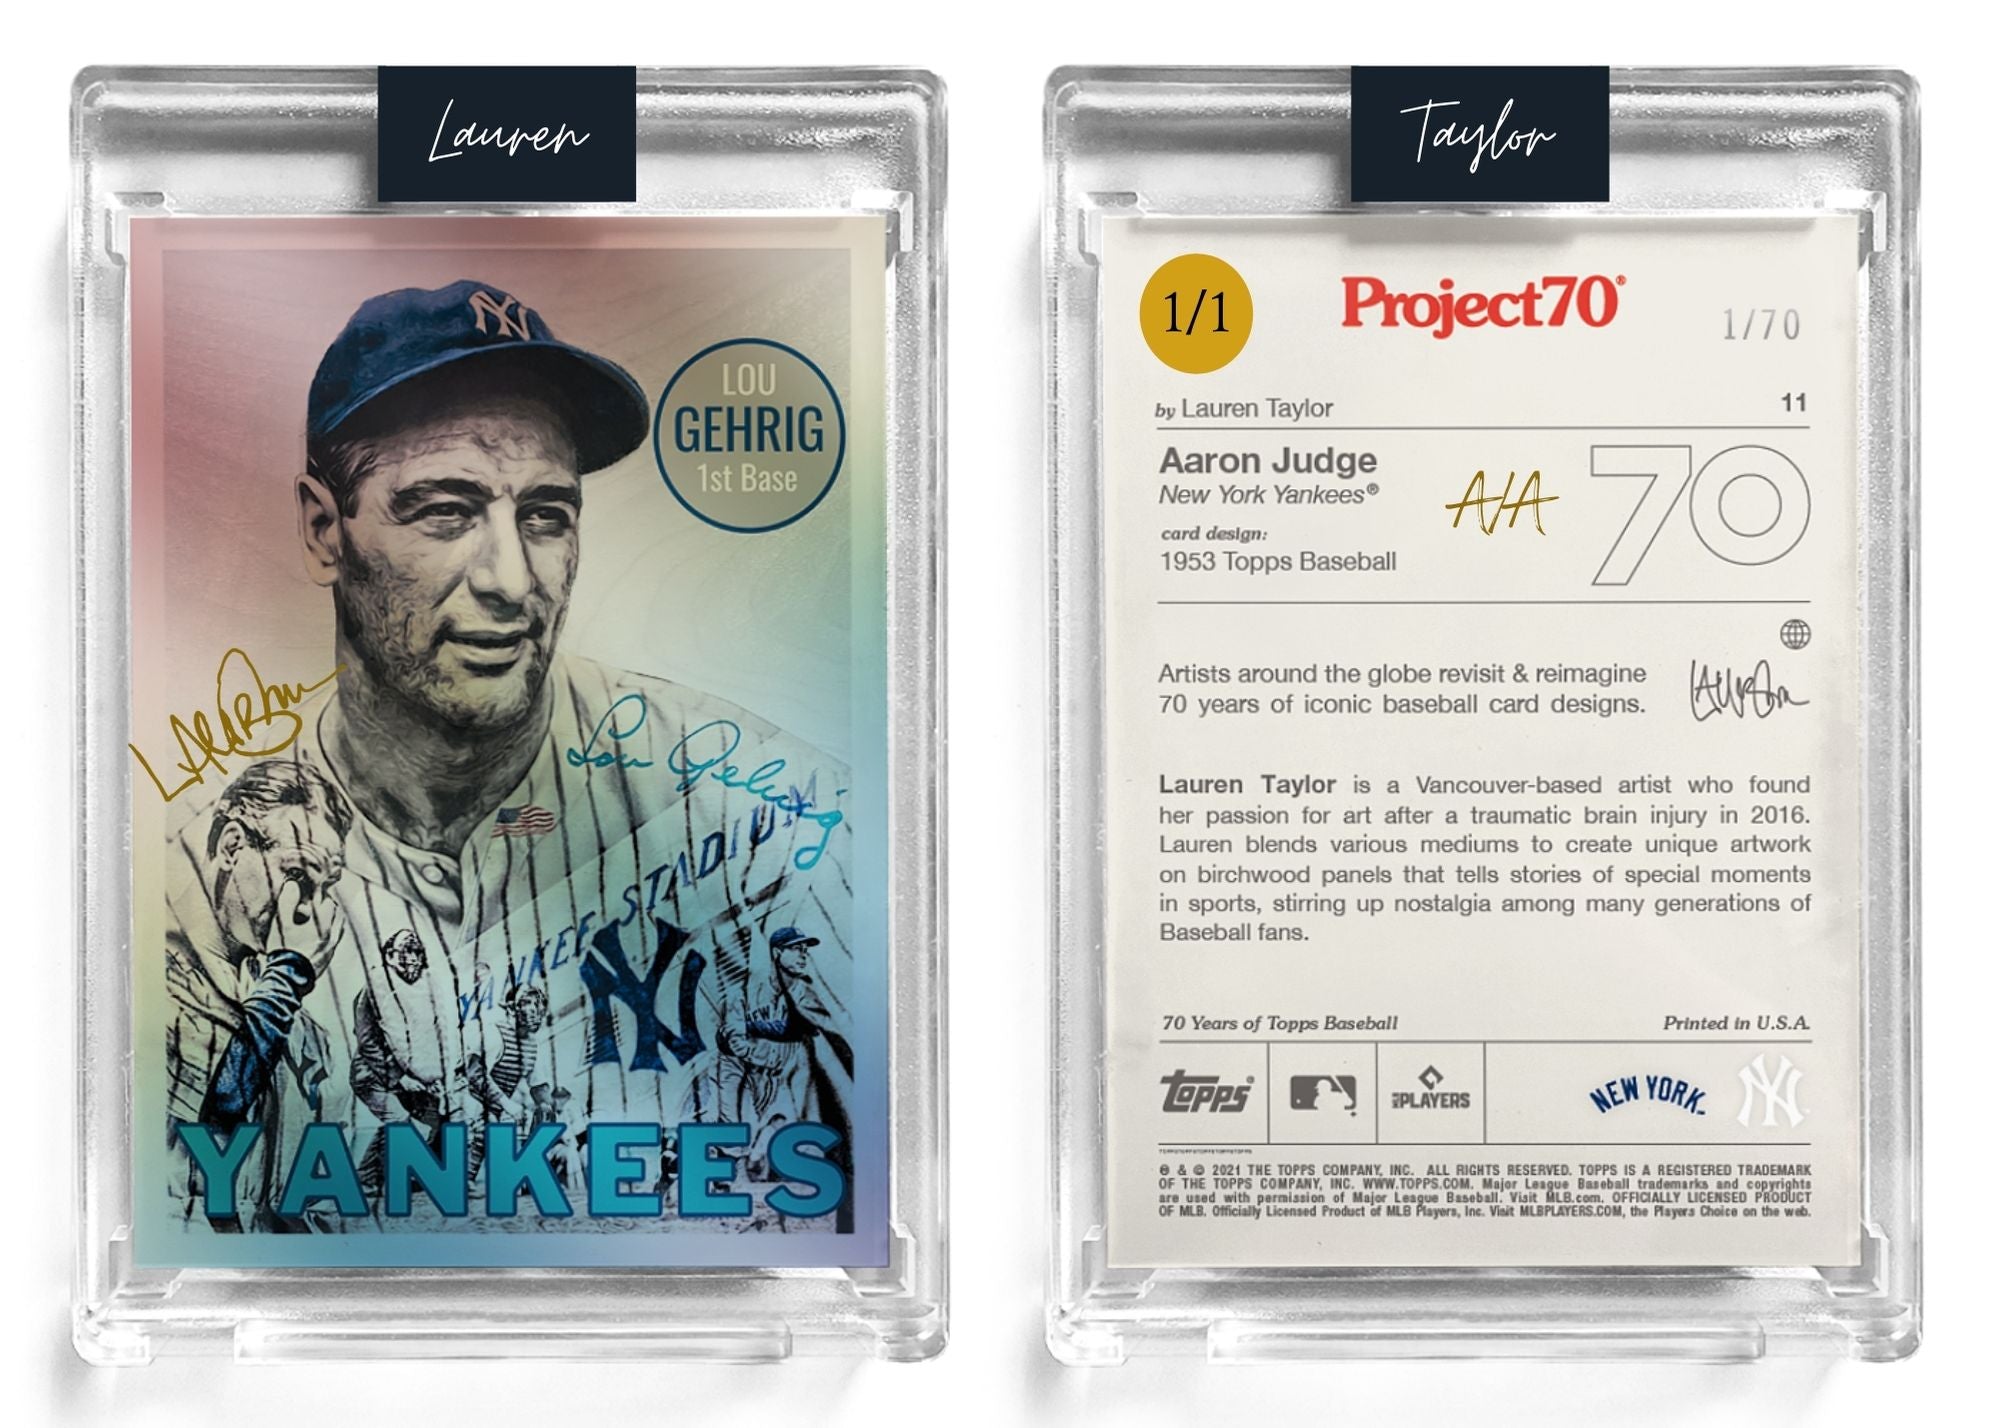 1/1 Gold Artist Signature - Lou Gehrig Foil Variant 130pt Card #70 by Lauren Taylor - Baseball Card